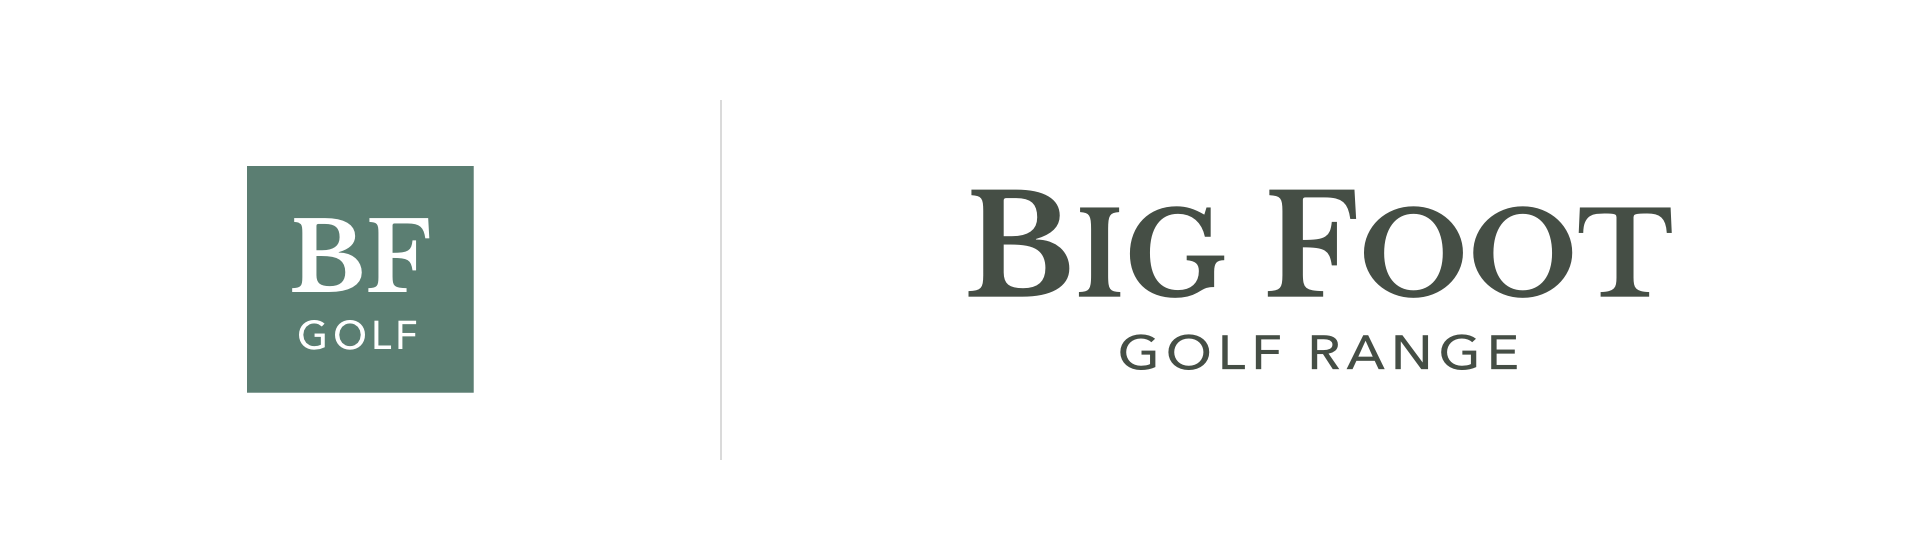 Big Foot Golf Range Branding